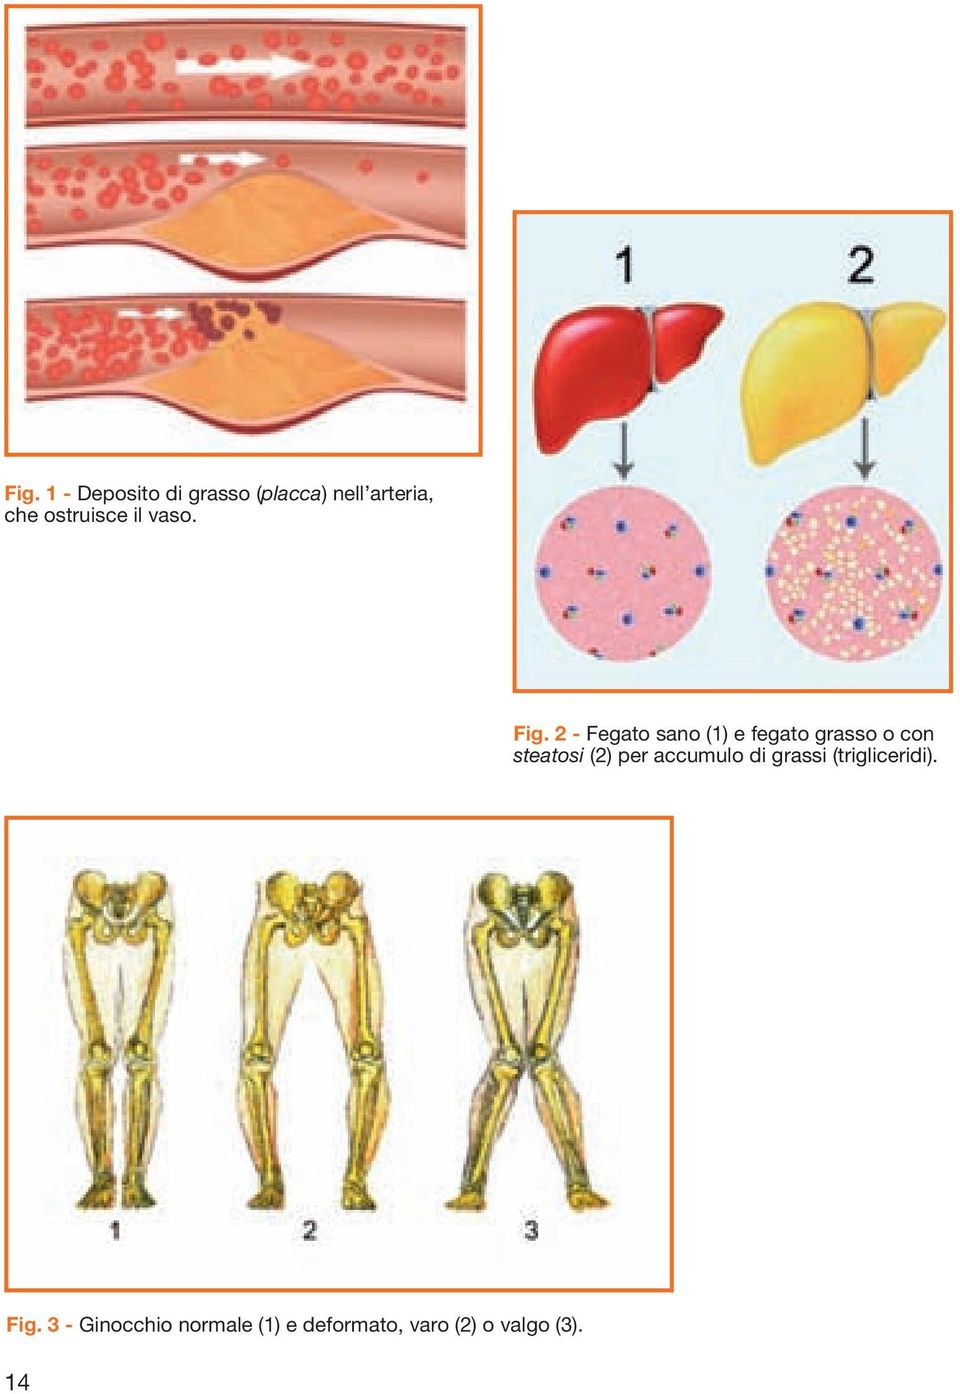 2 - Fegato sano (1) e fegato grasso o con steatosi (2) per